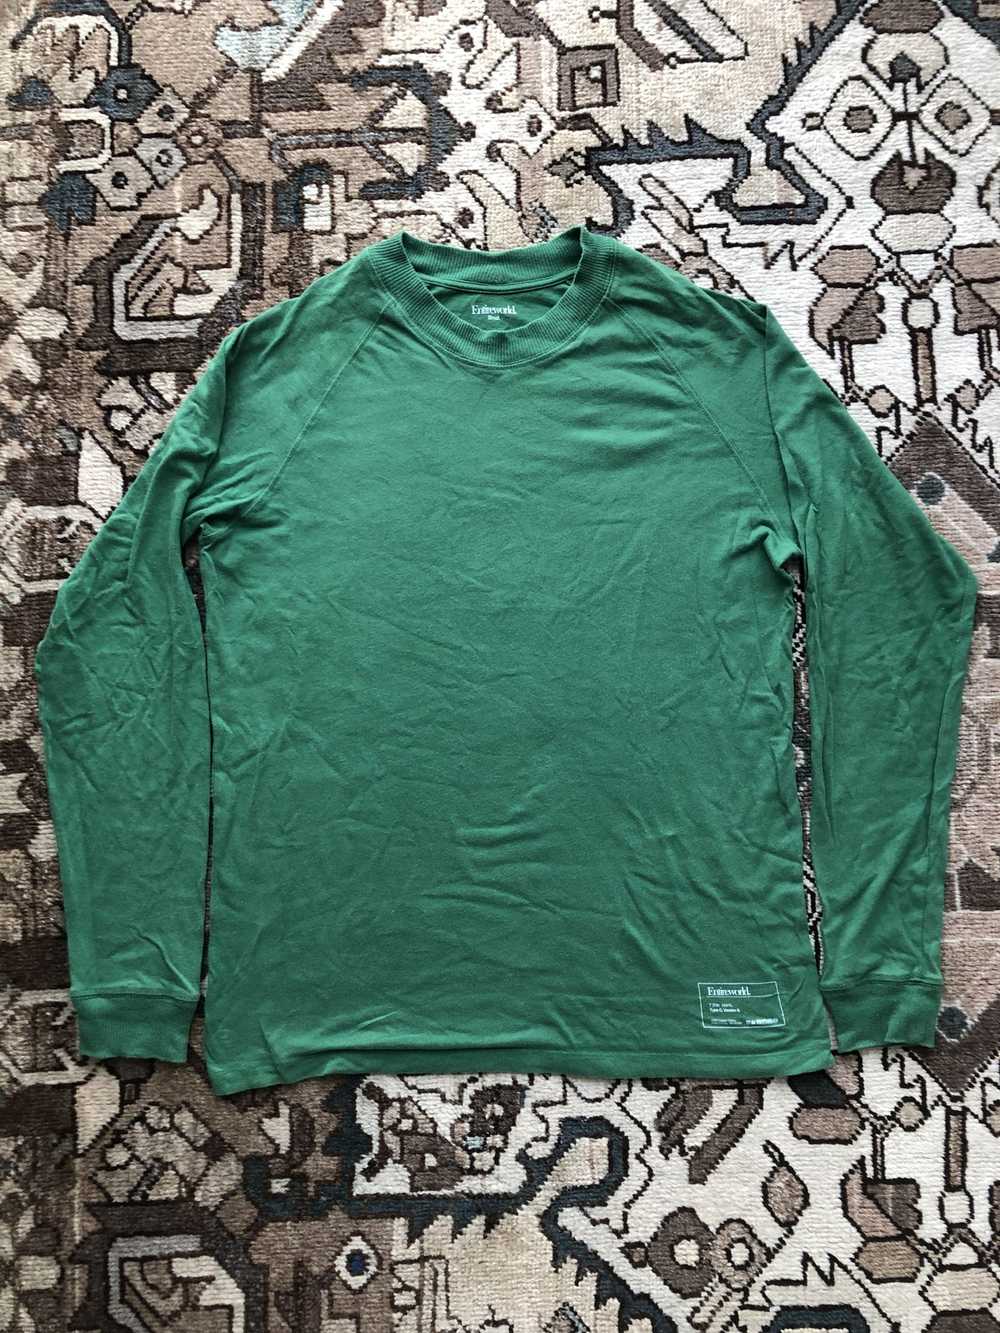 Entireworld Type C, Version 9 Long Sleeve T Shirt - image 1